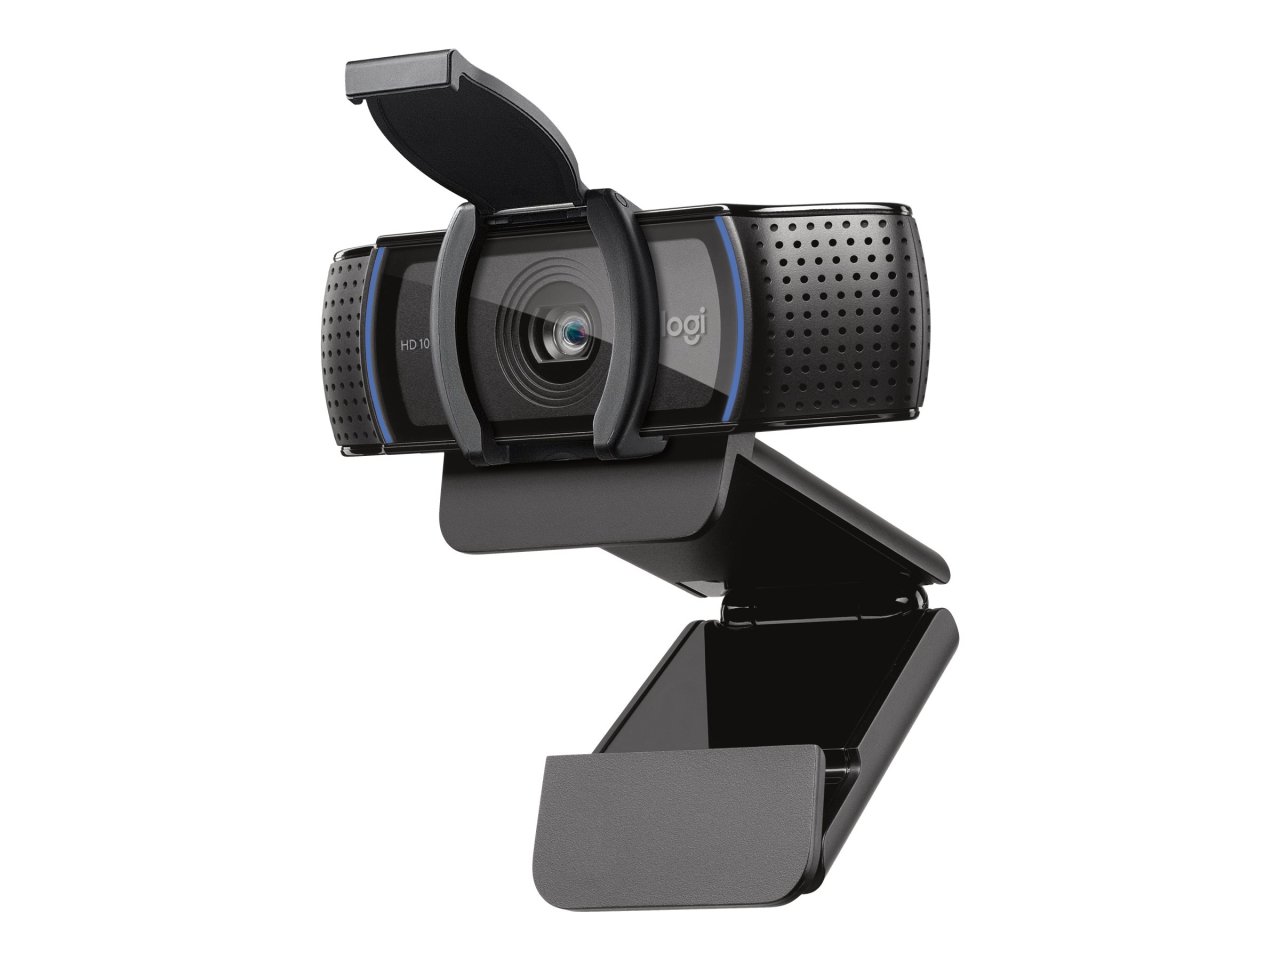 Logitech C920E Webcam